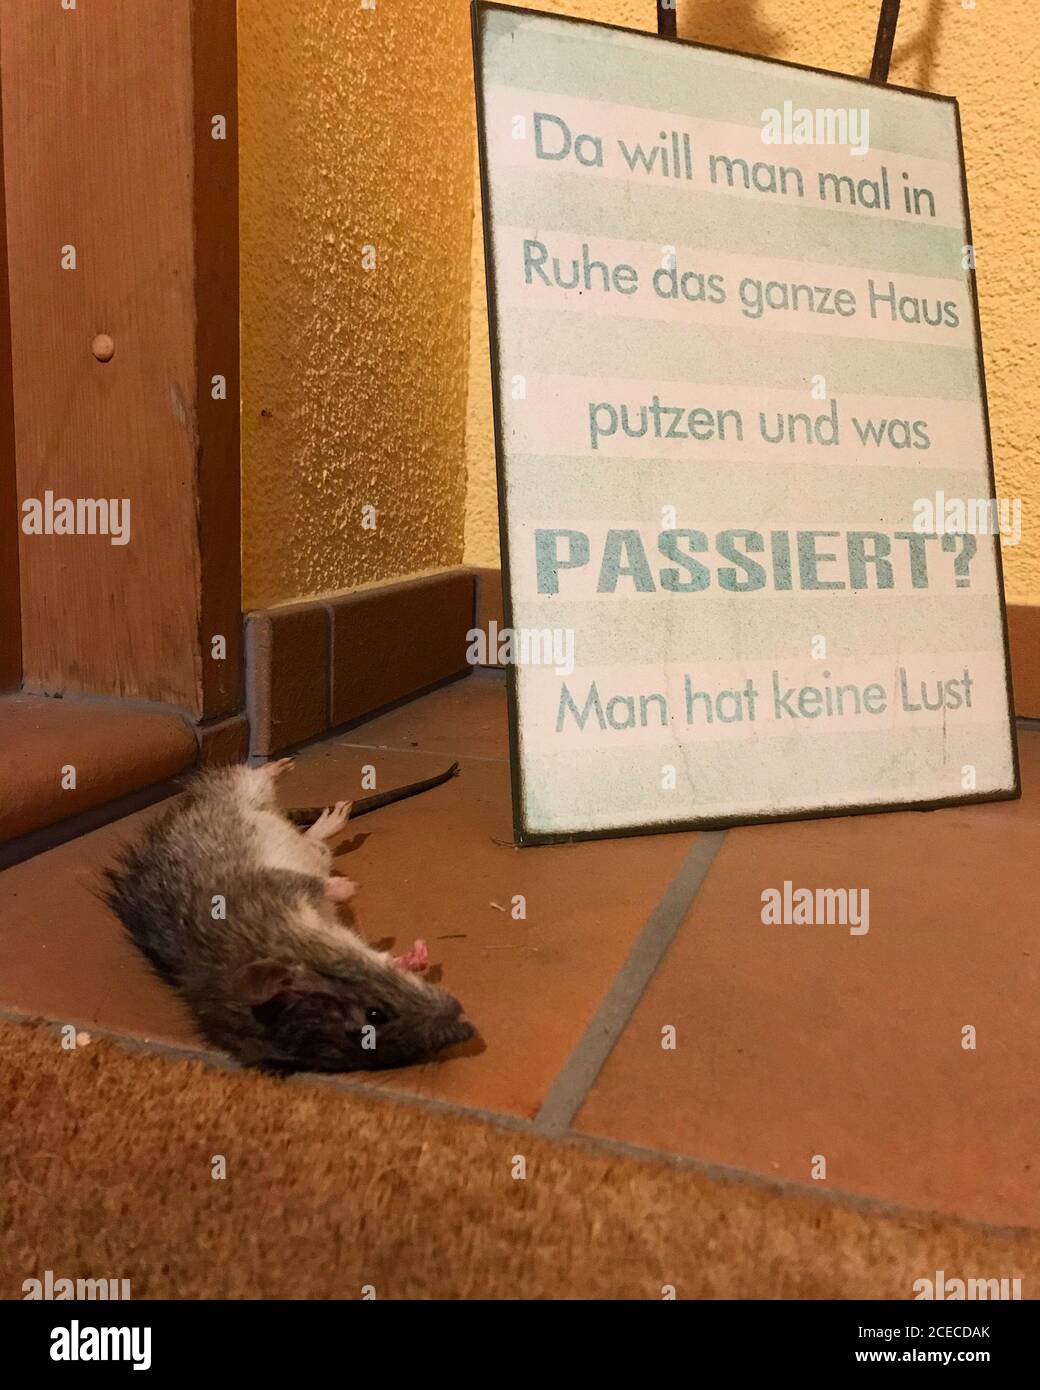 eine tote Ratte liegt vor dem Eingang mit dem Schild: 'Da will man mal in Ruhe das ganze Haus putzen und was passiert? Man hat keine Lust.' Motivation Stock Photo